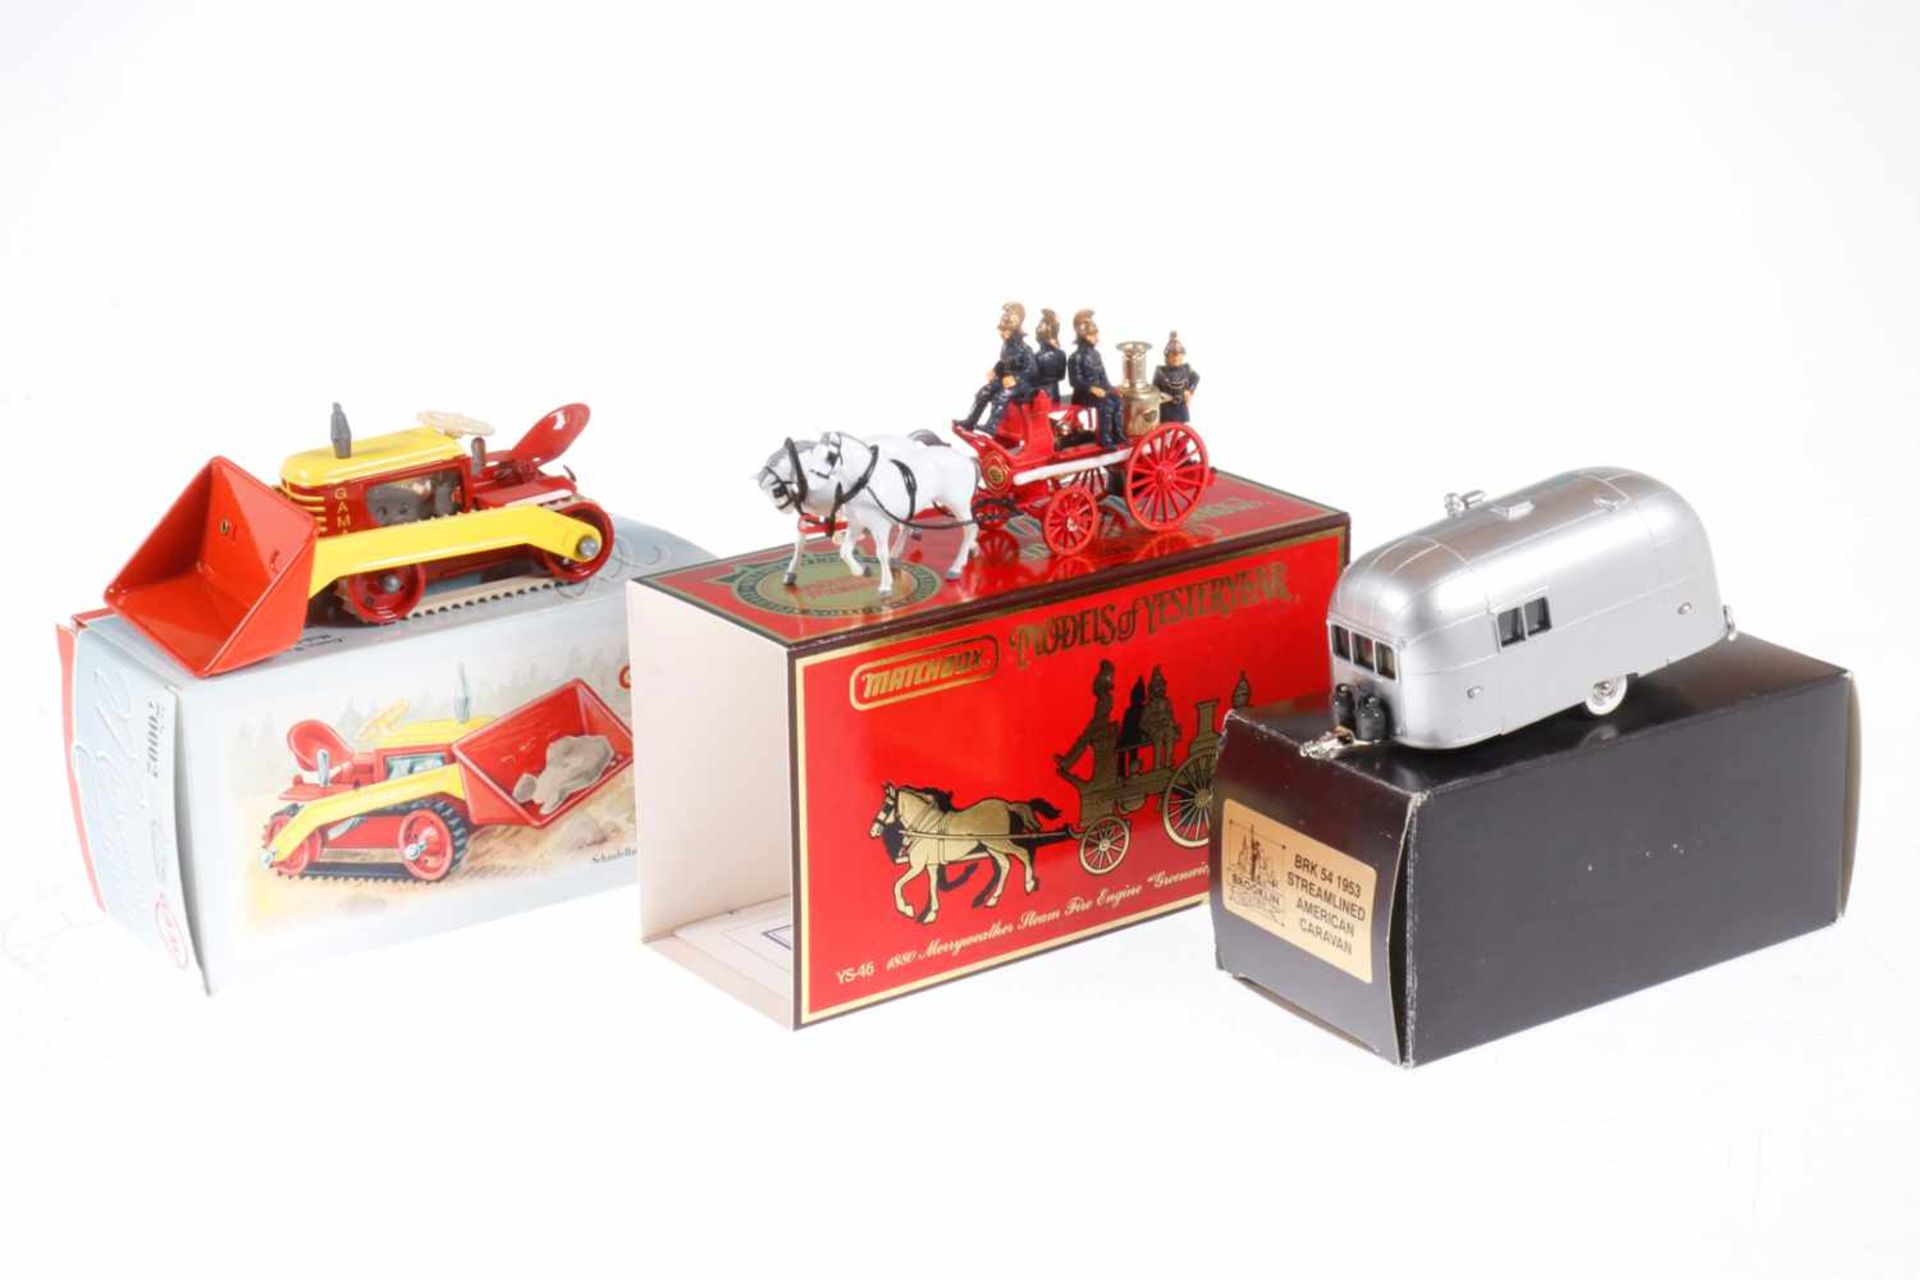 3 versch. Modelle, Matchbox Sonderedition, Gama Museumsedition, Brooklin Modell Guss-Wohnwagen, 2